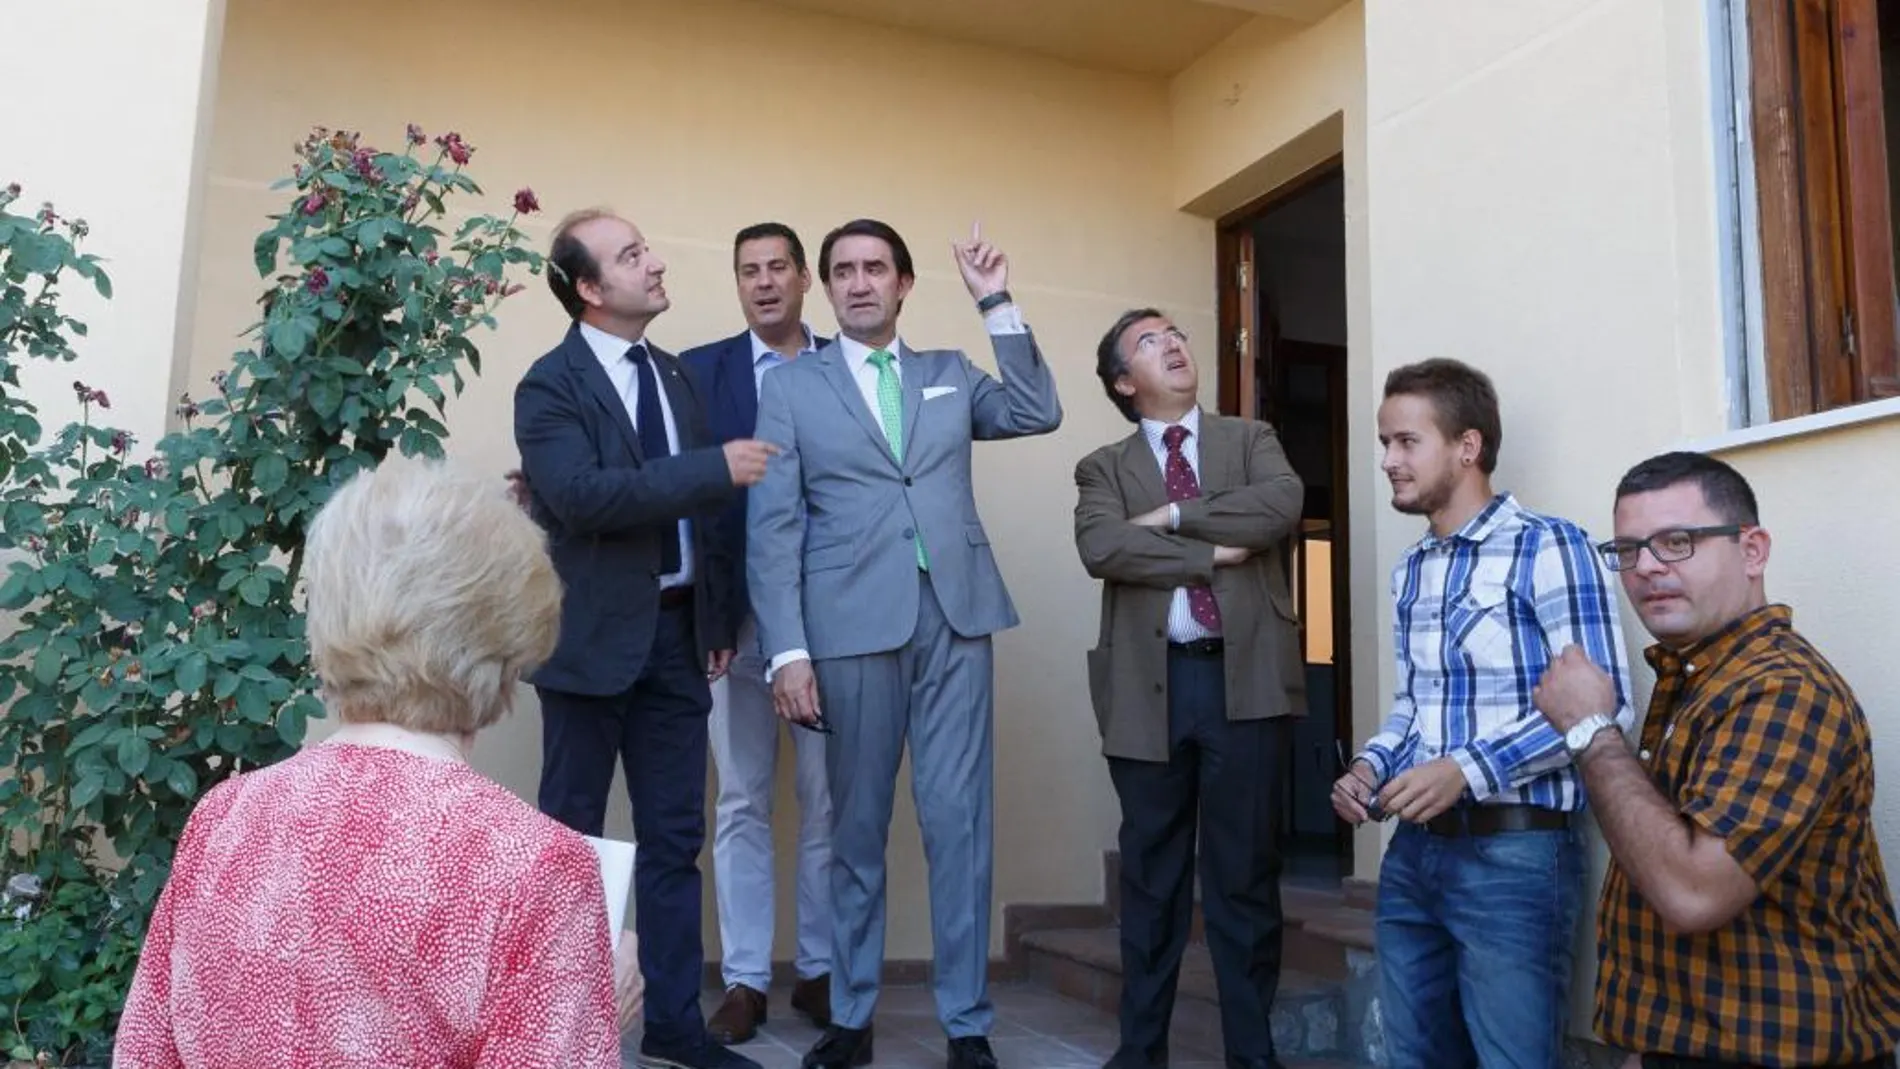 El consejero de Fomento, Juan Carlos Suárez-Quiñones, visita una vivienda rehabilitada en Morales del Vino